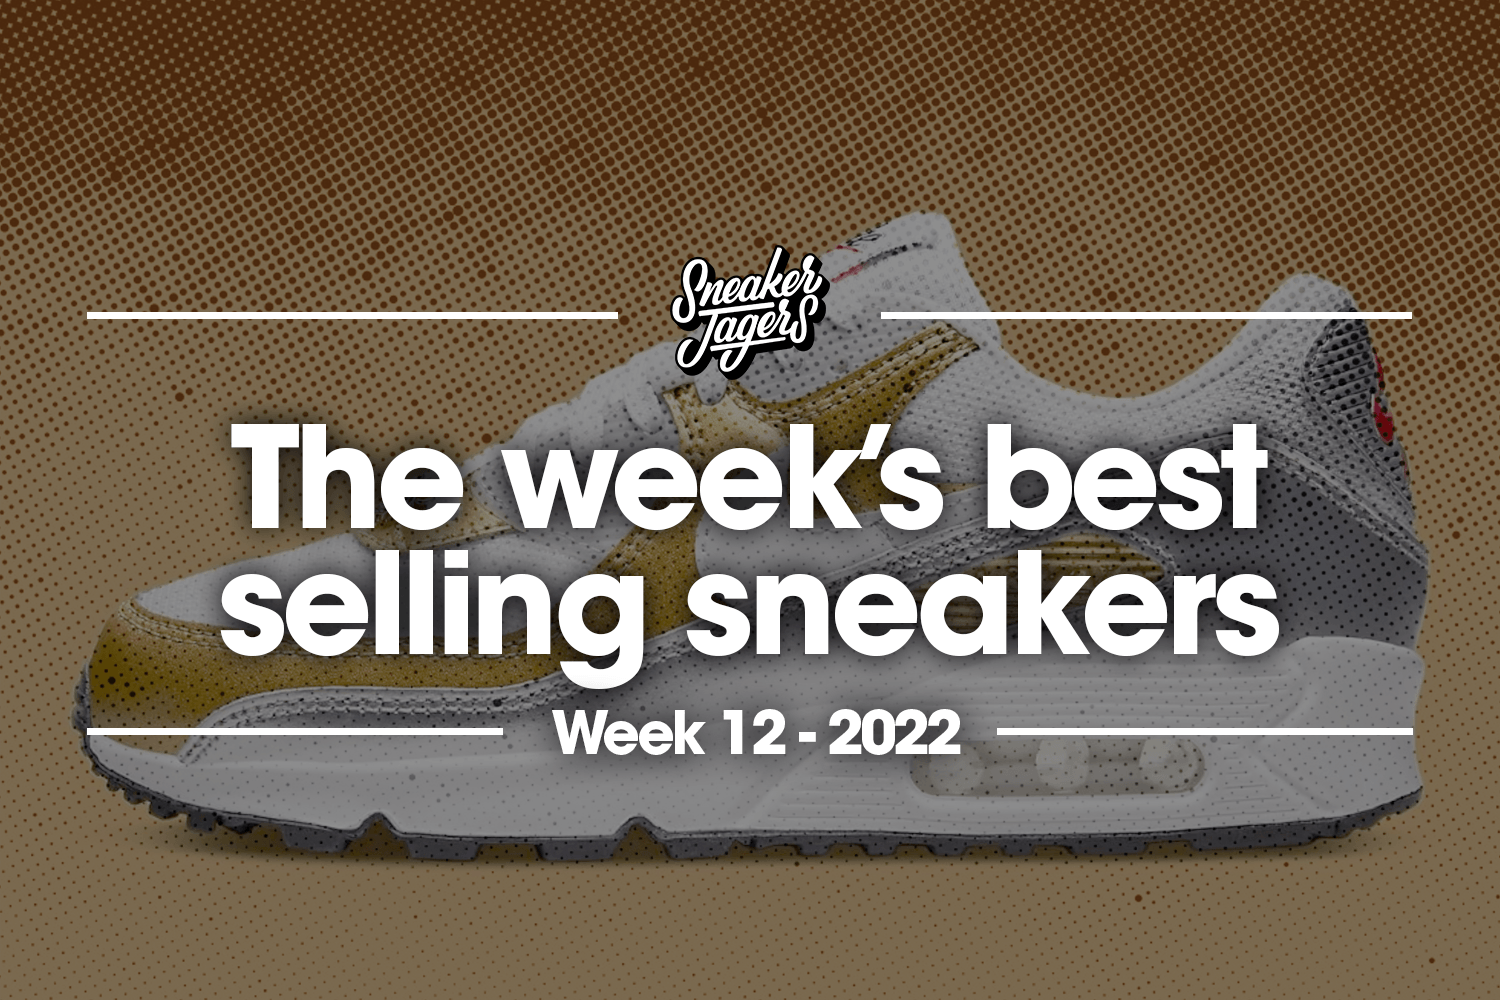 The 5 best-selling sneakers of week 12